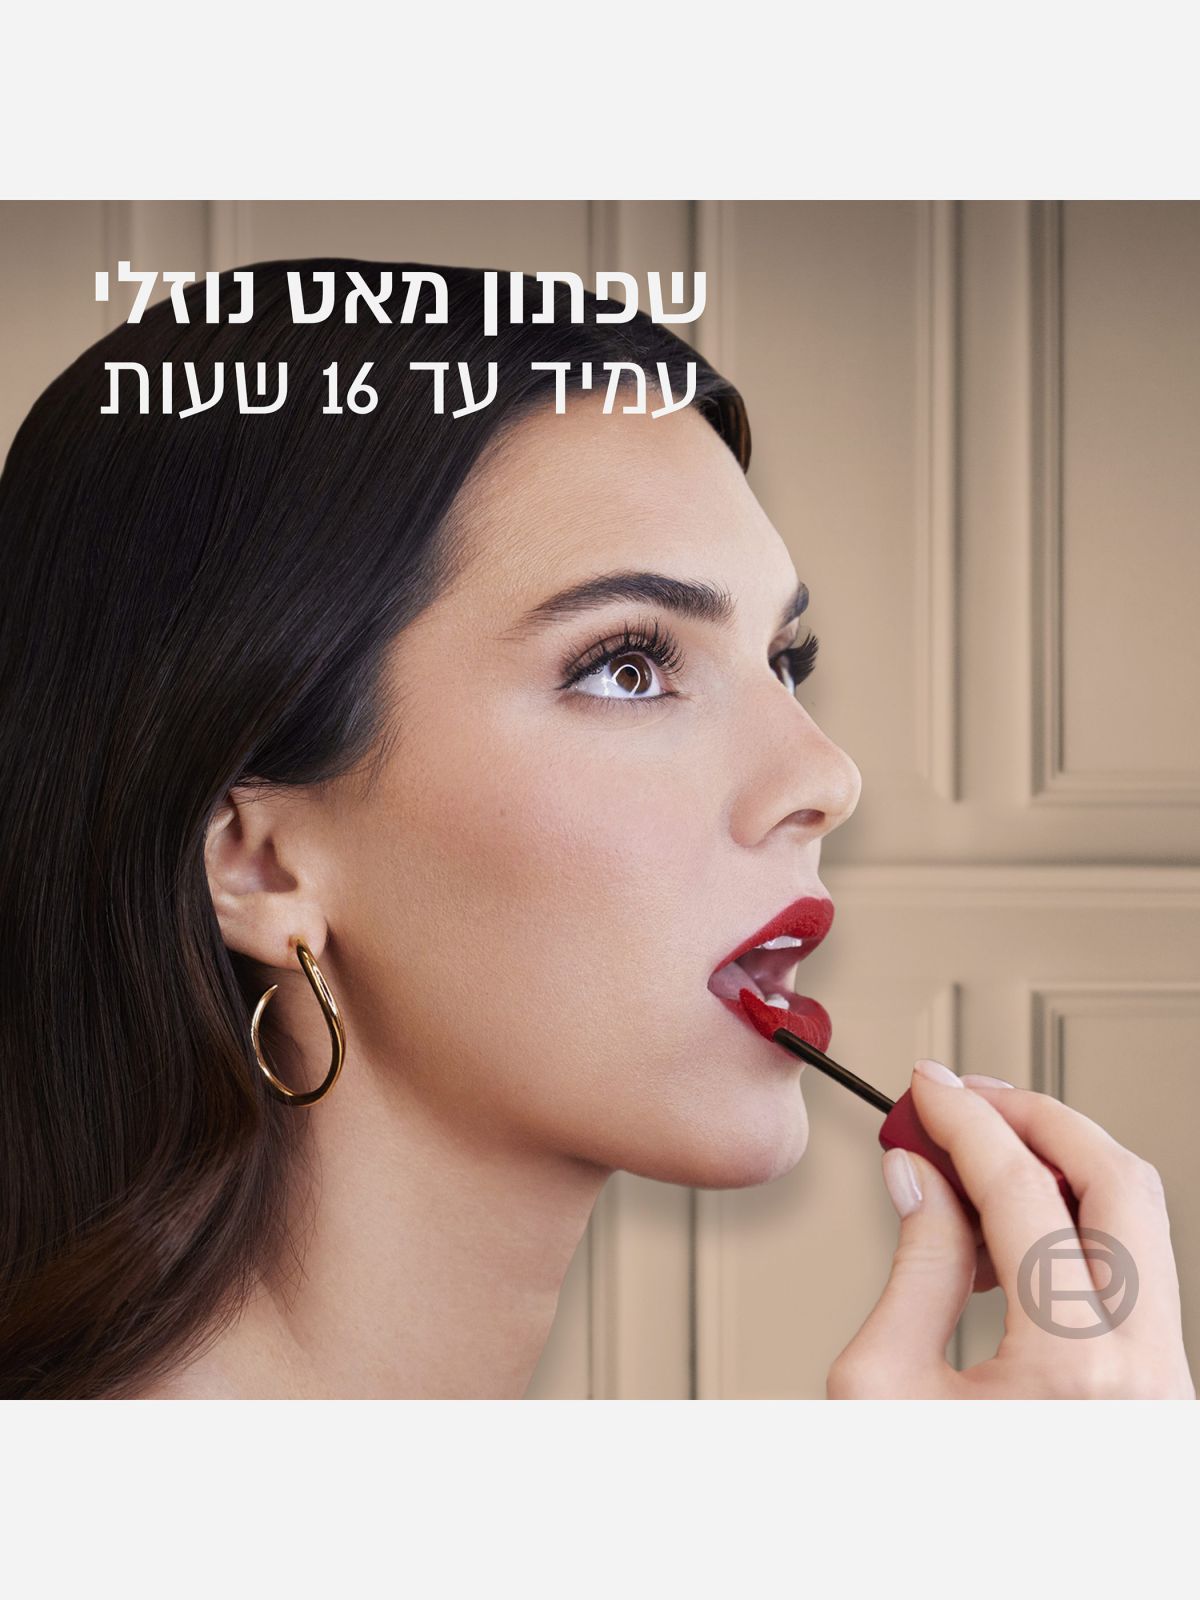  שפתון עמיד Infaillible בגימור מאט Infaillible matte resistance lipstick של L'OREAL PARIS